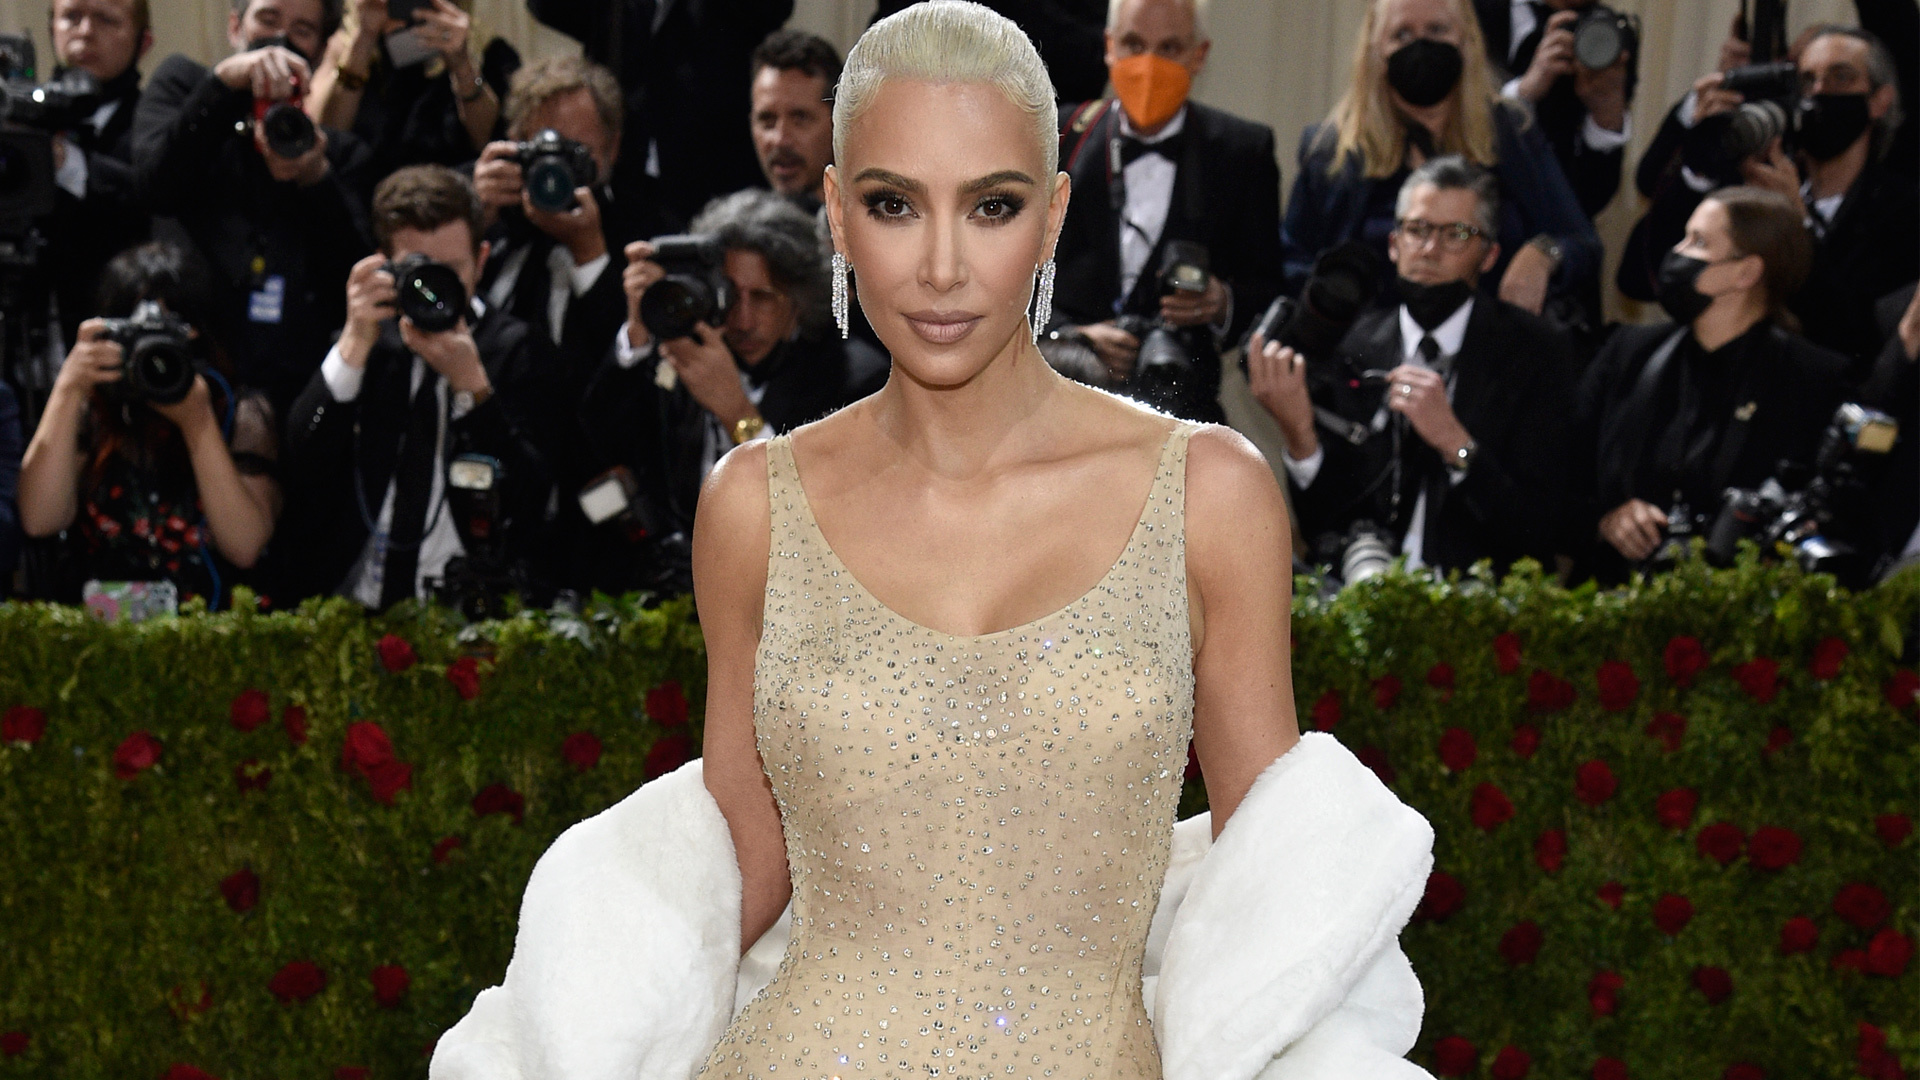 élite Aplicable Maligno Kim Kardashian luce el vestido más polémico de Marilyn Monroe